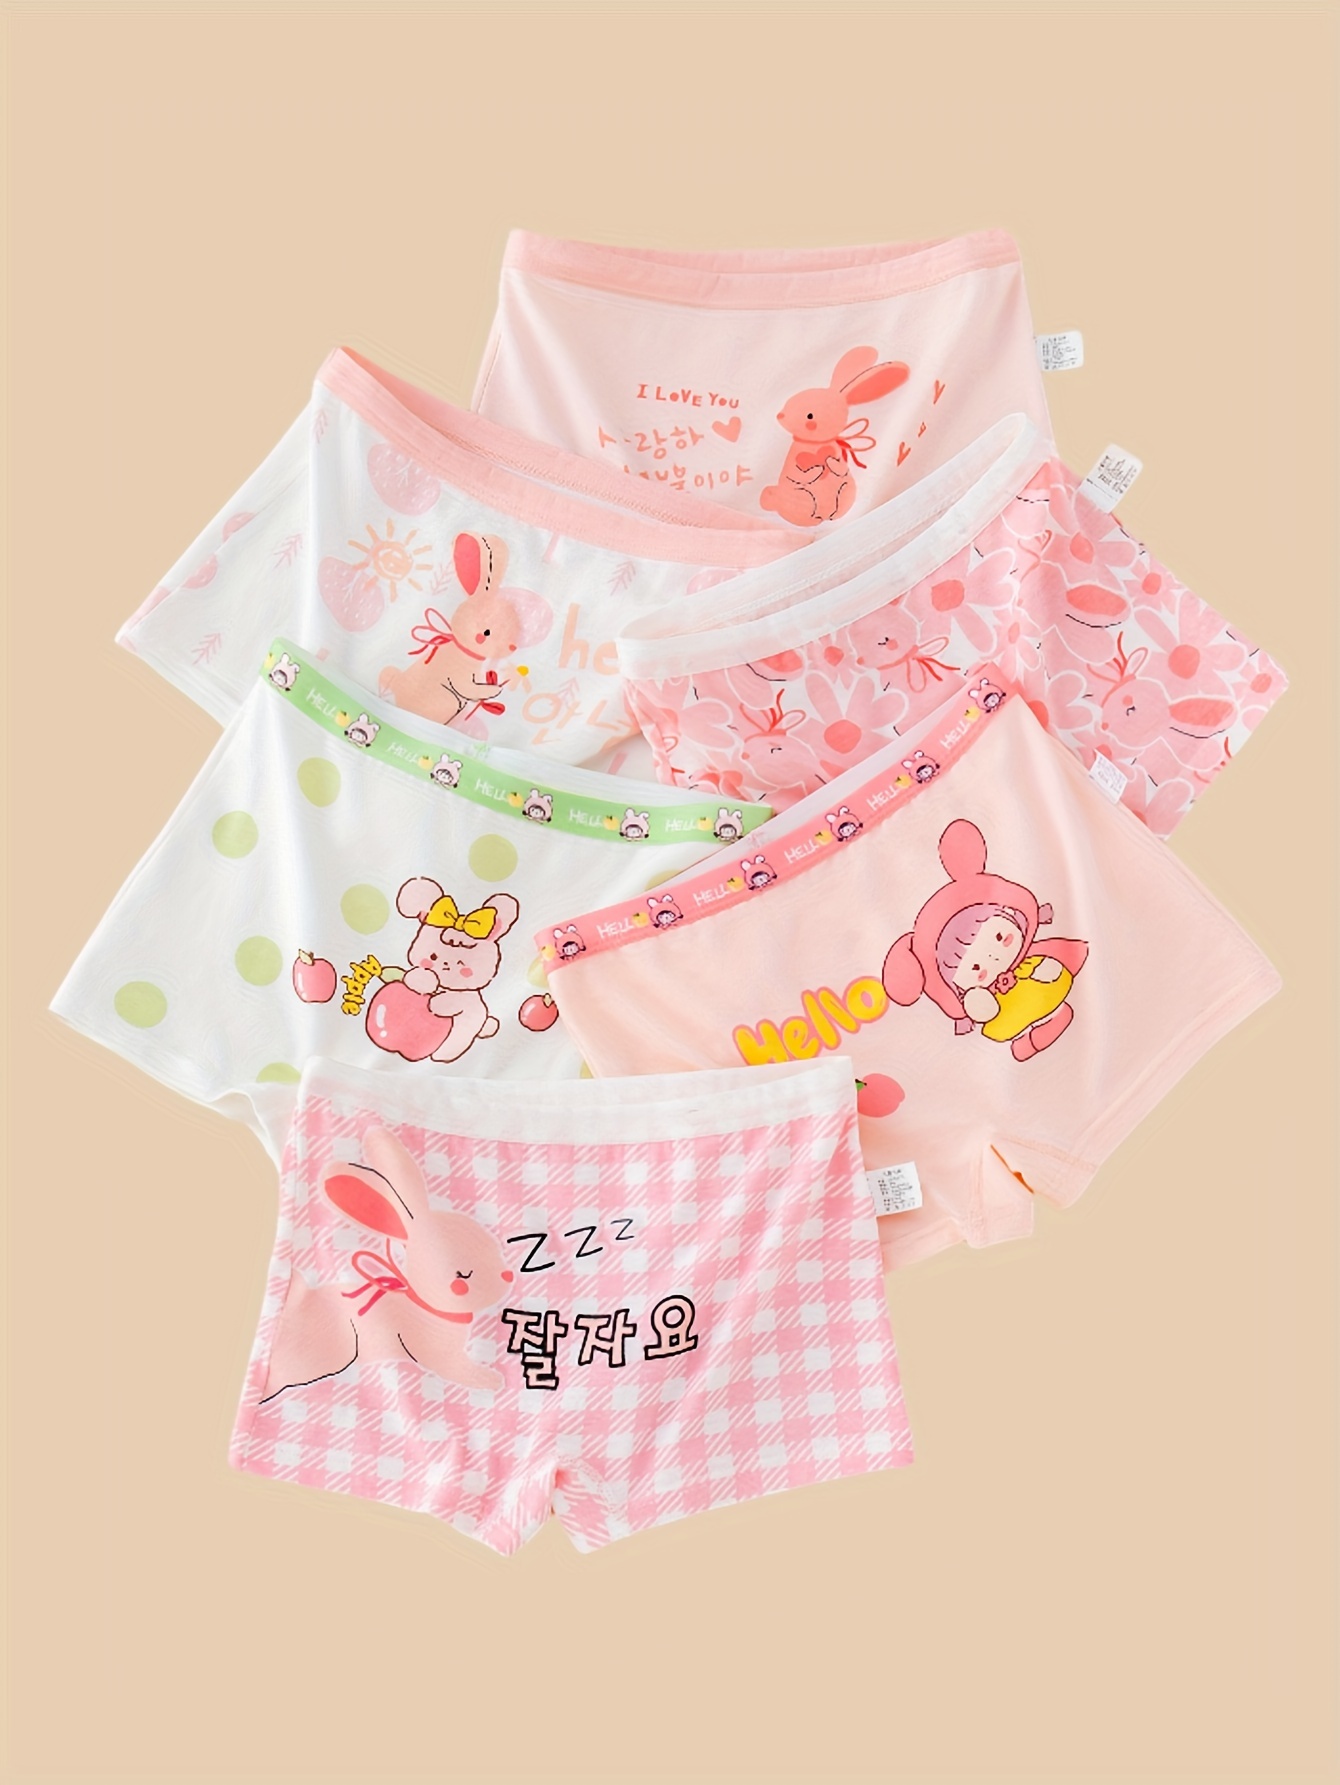 Princess Peach In Her Underwear - Temu